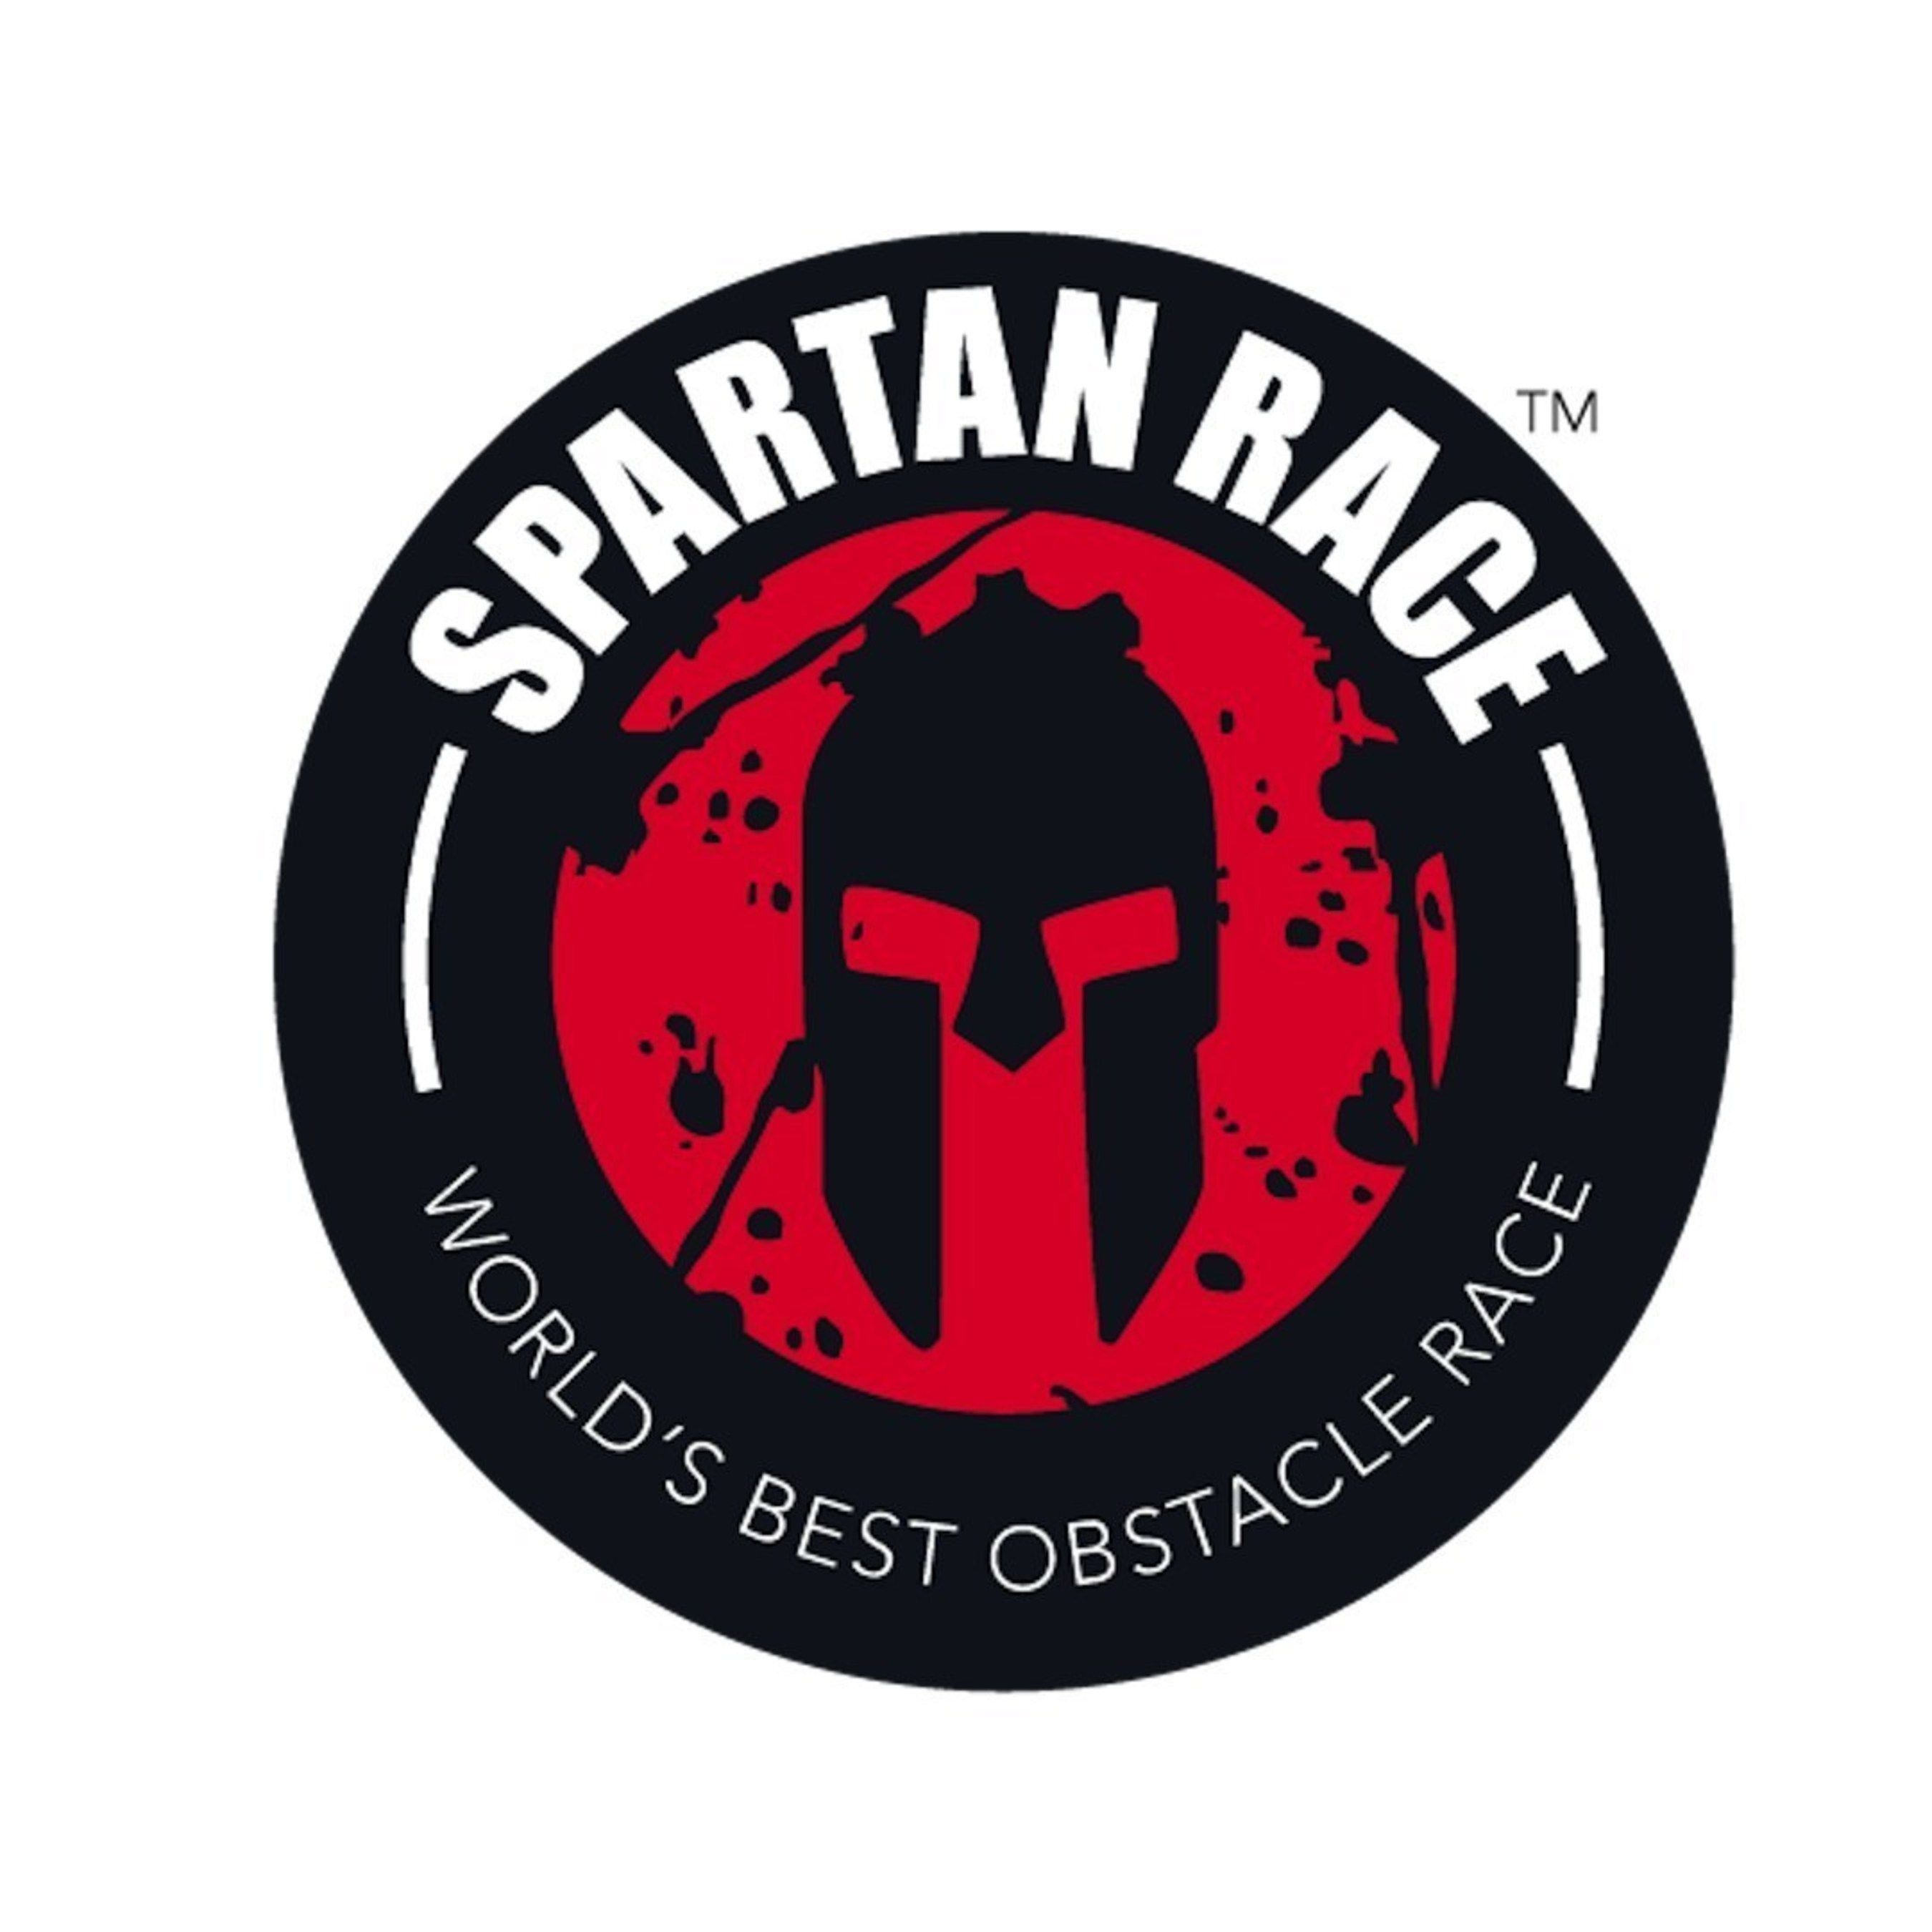 Spartan Race Logo Vector at Vectorified.com | Collection of Spartan ...